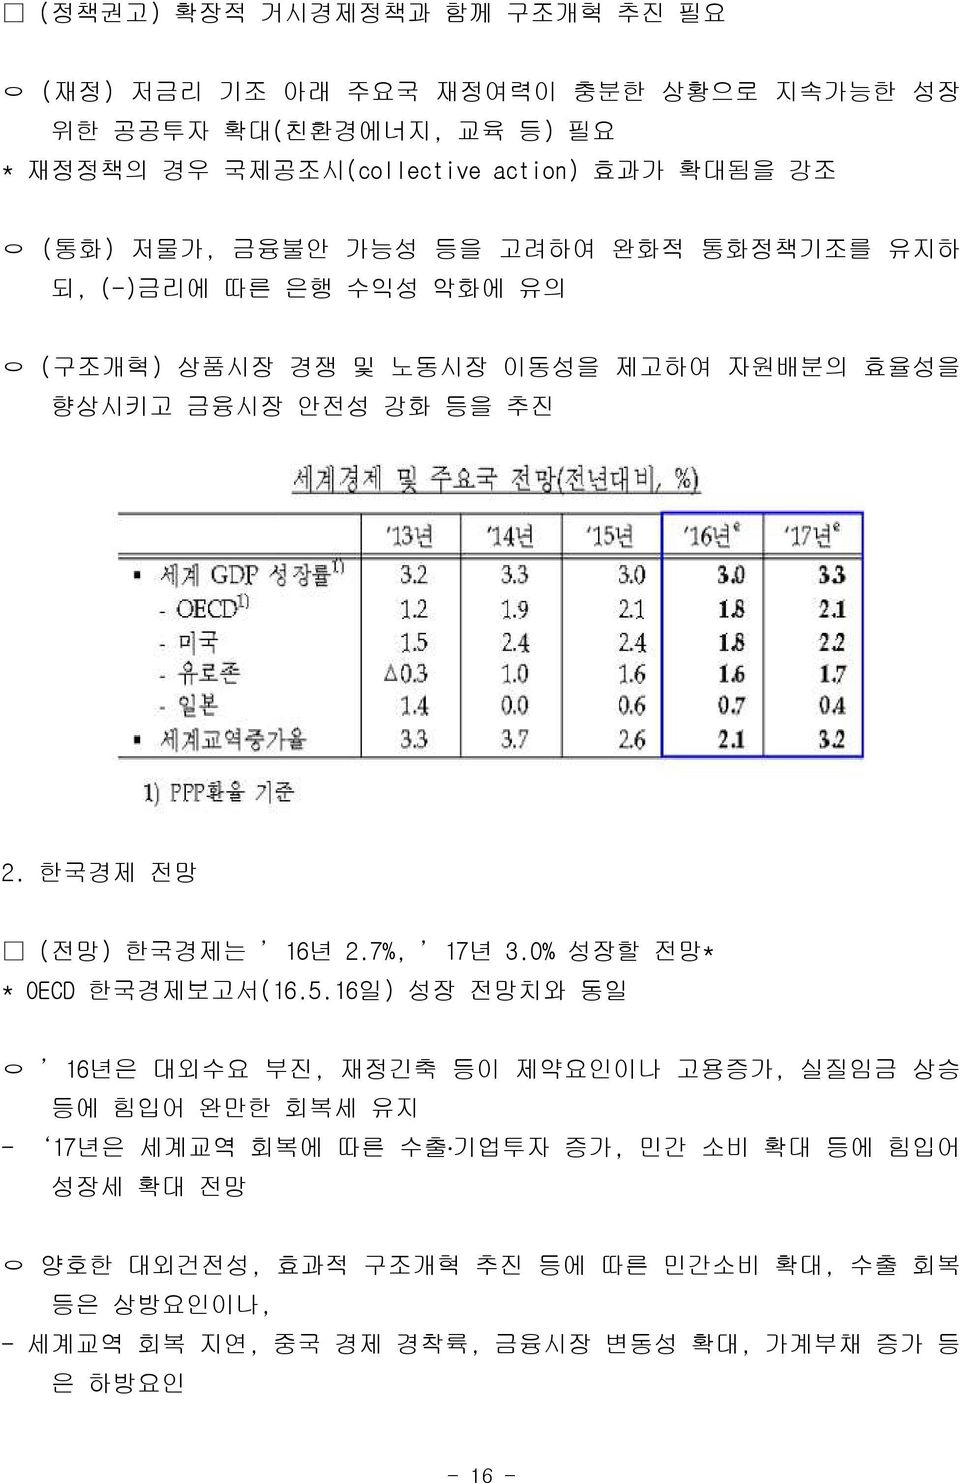 한국경제 전망 (전망) 한국경제는 16년 2.7%, 17년 3.0% 성장할 전망* * OECD 한국경제보고서(16.5.